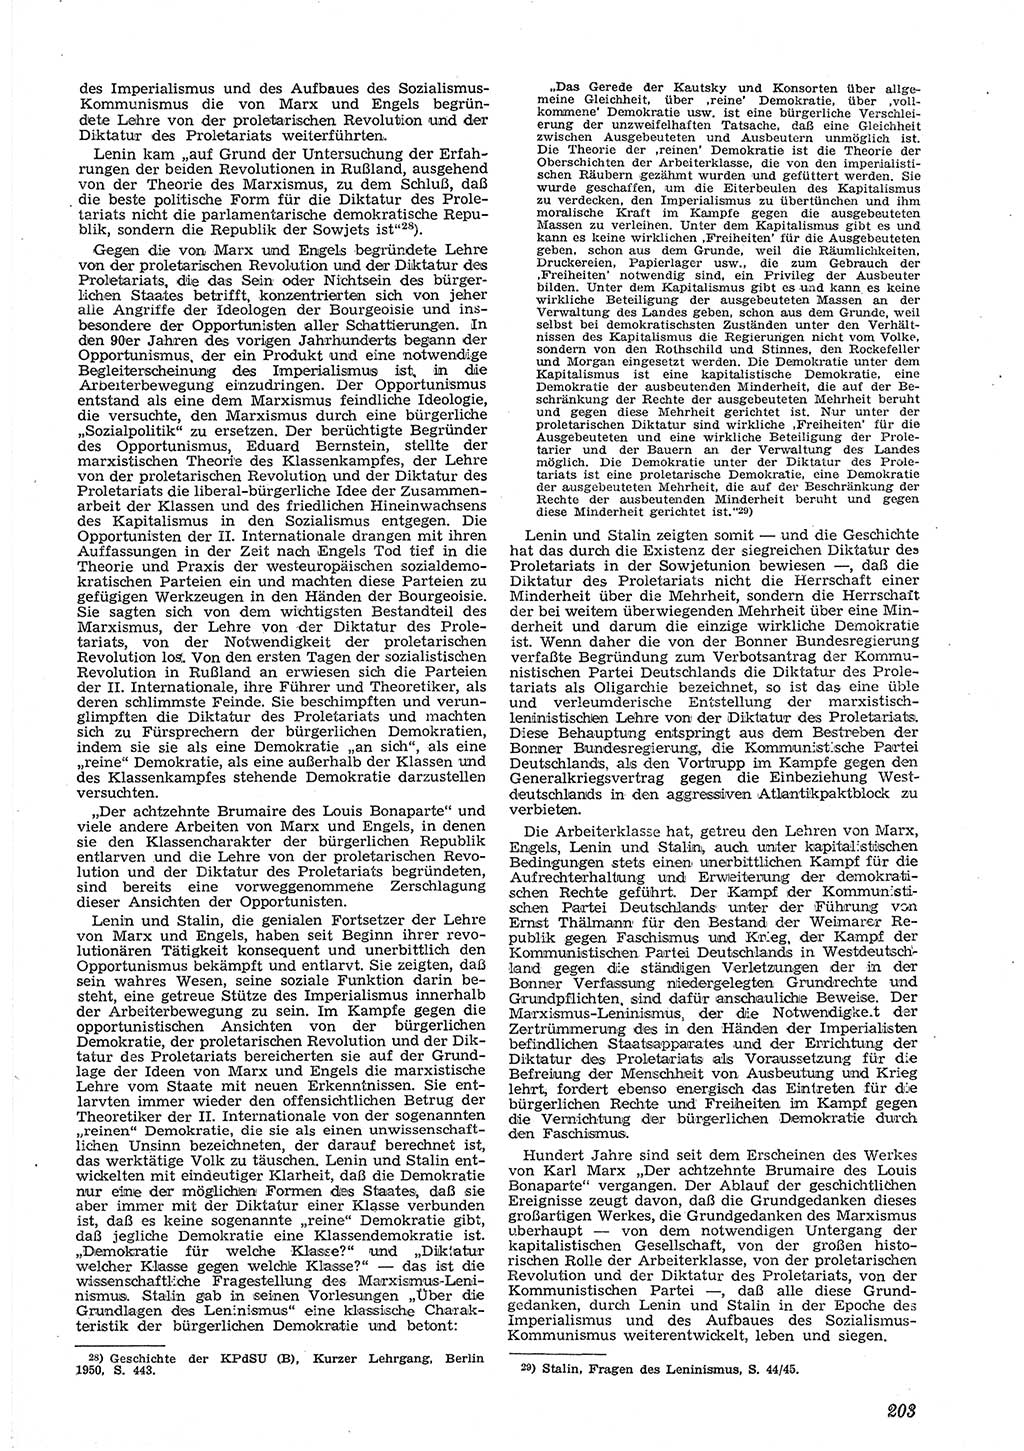 Neue Justiz (NJ), Zeitschrift für Recht und Rechtswissenschaft [Deutsche Demokratische Republik (DDR)], 6. Jahrgang 1952, Seite 203 (NJ DDR 1952, S. 203)